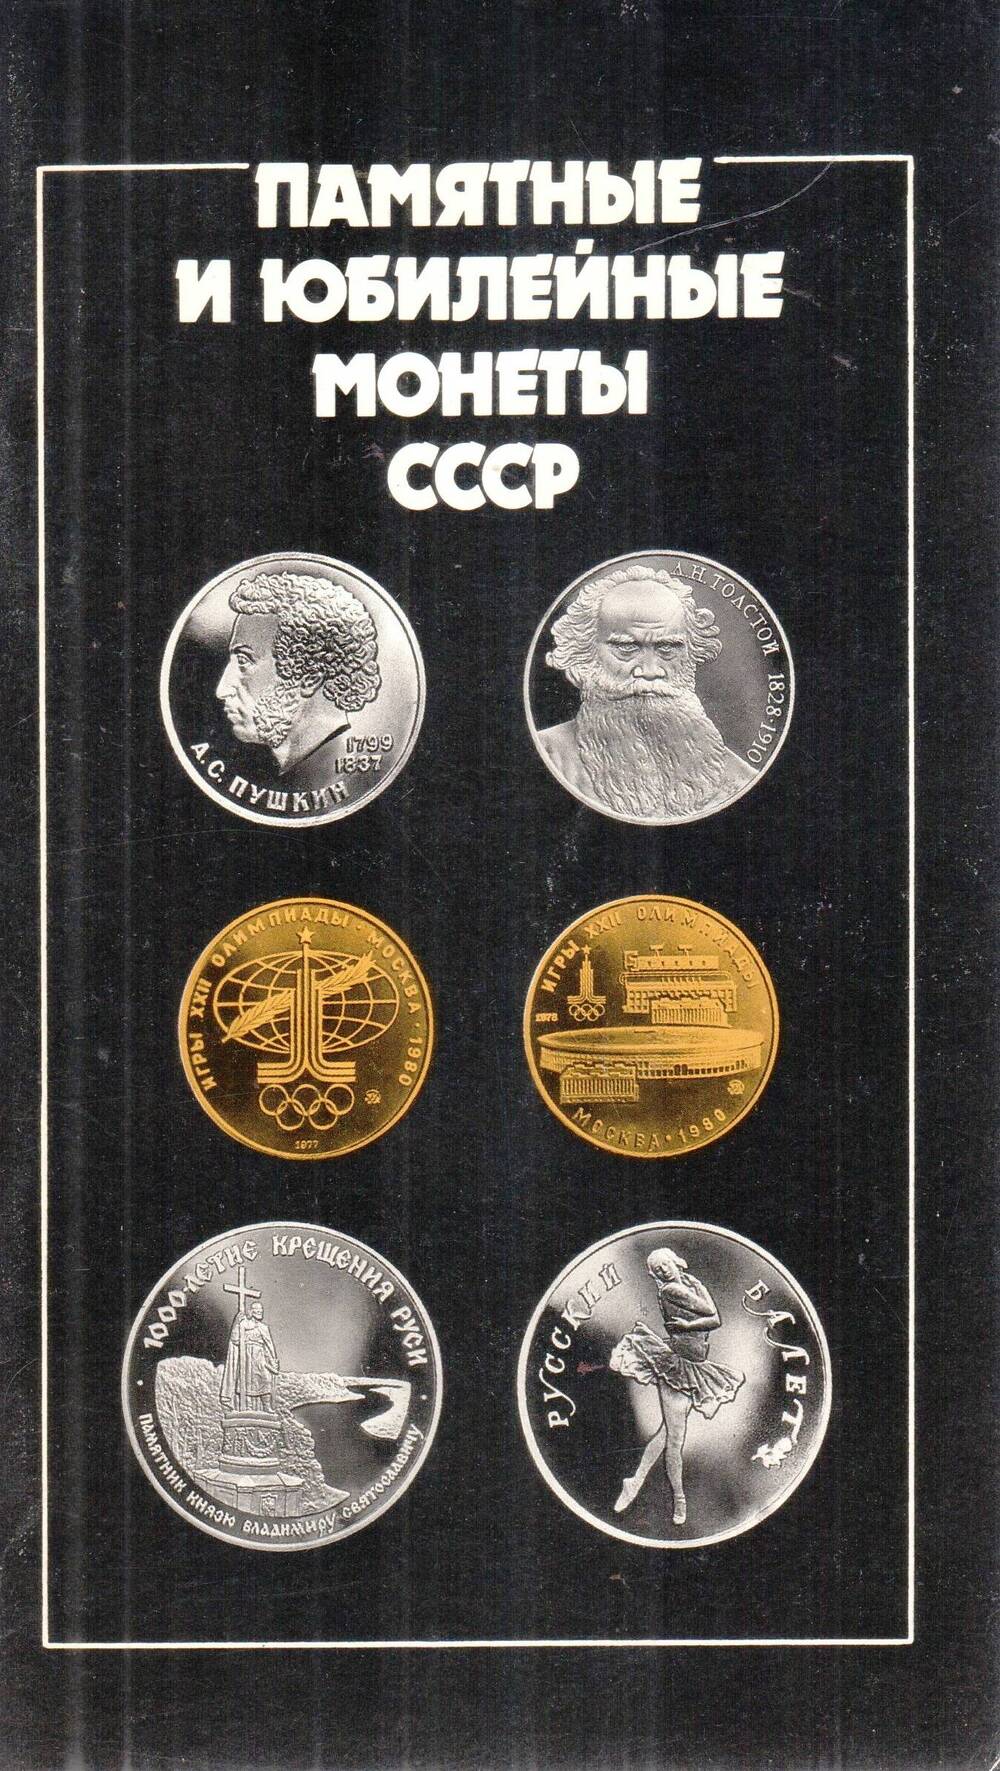 Справочник Памятные и юбилейные монеты СССР, Москва, 1990 г.